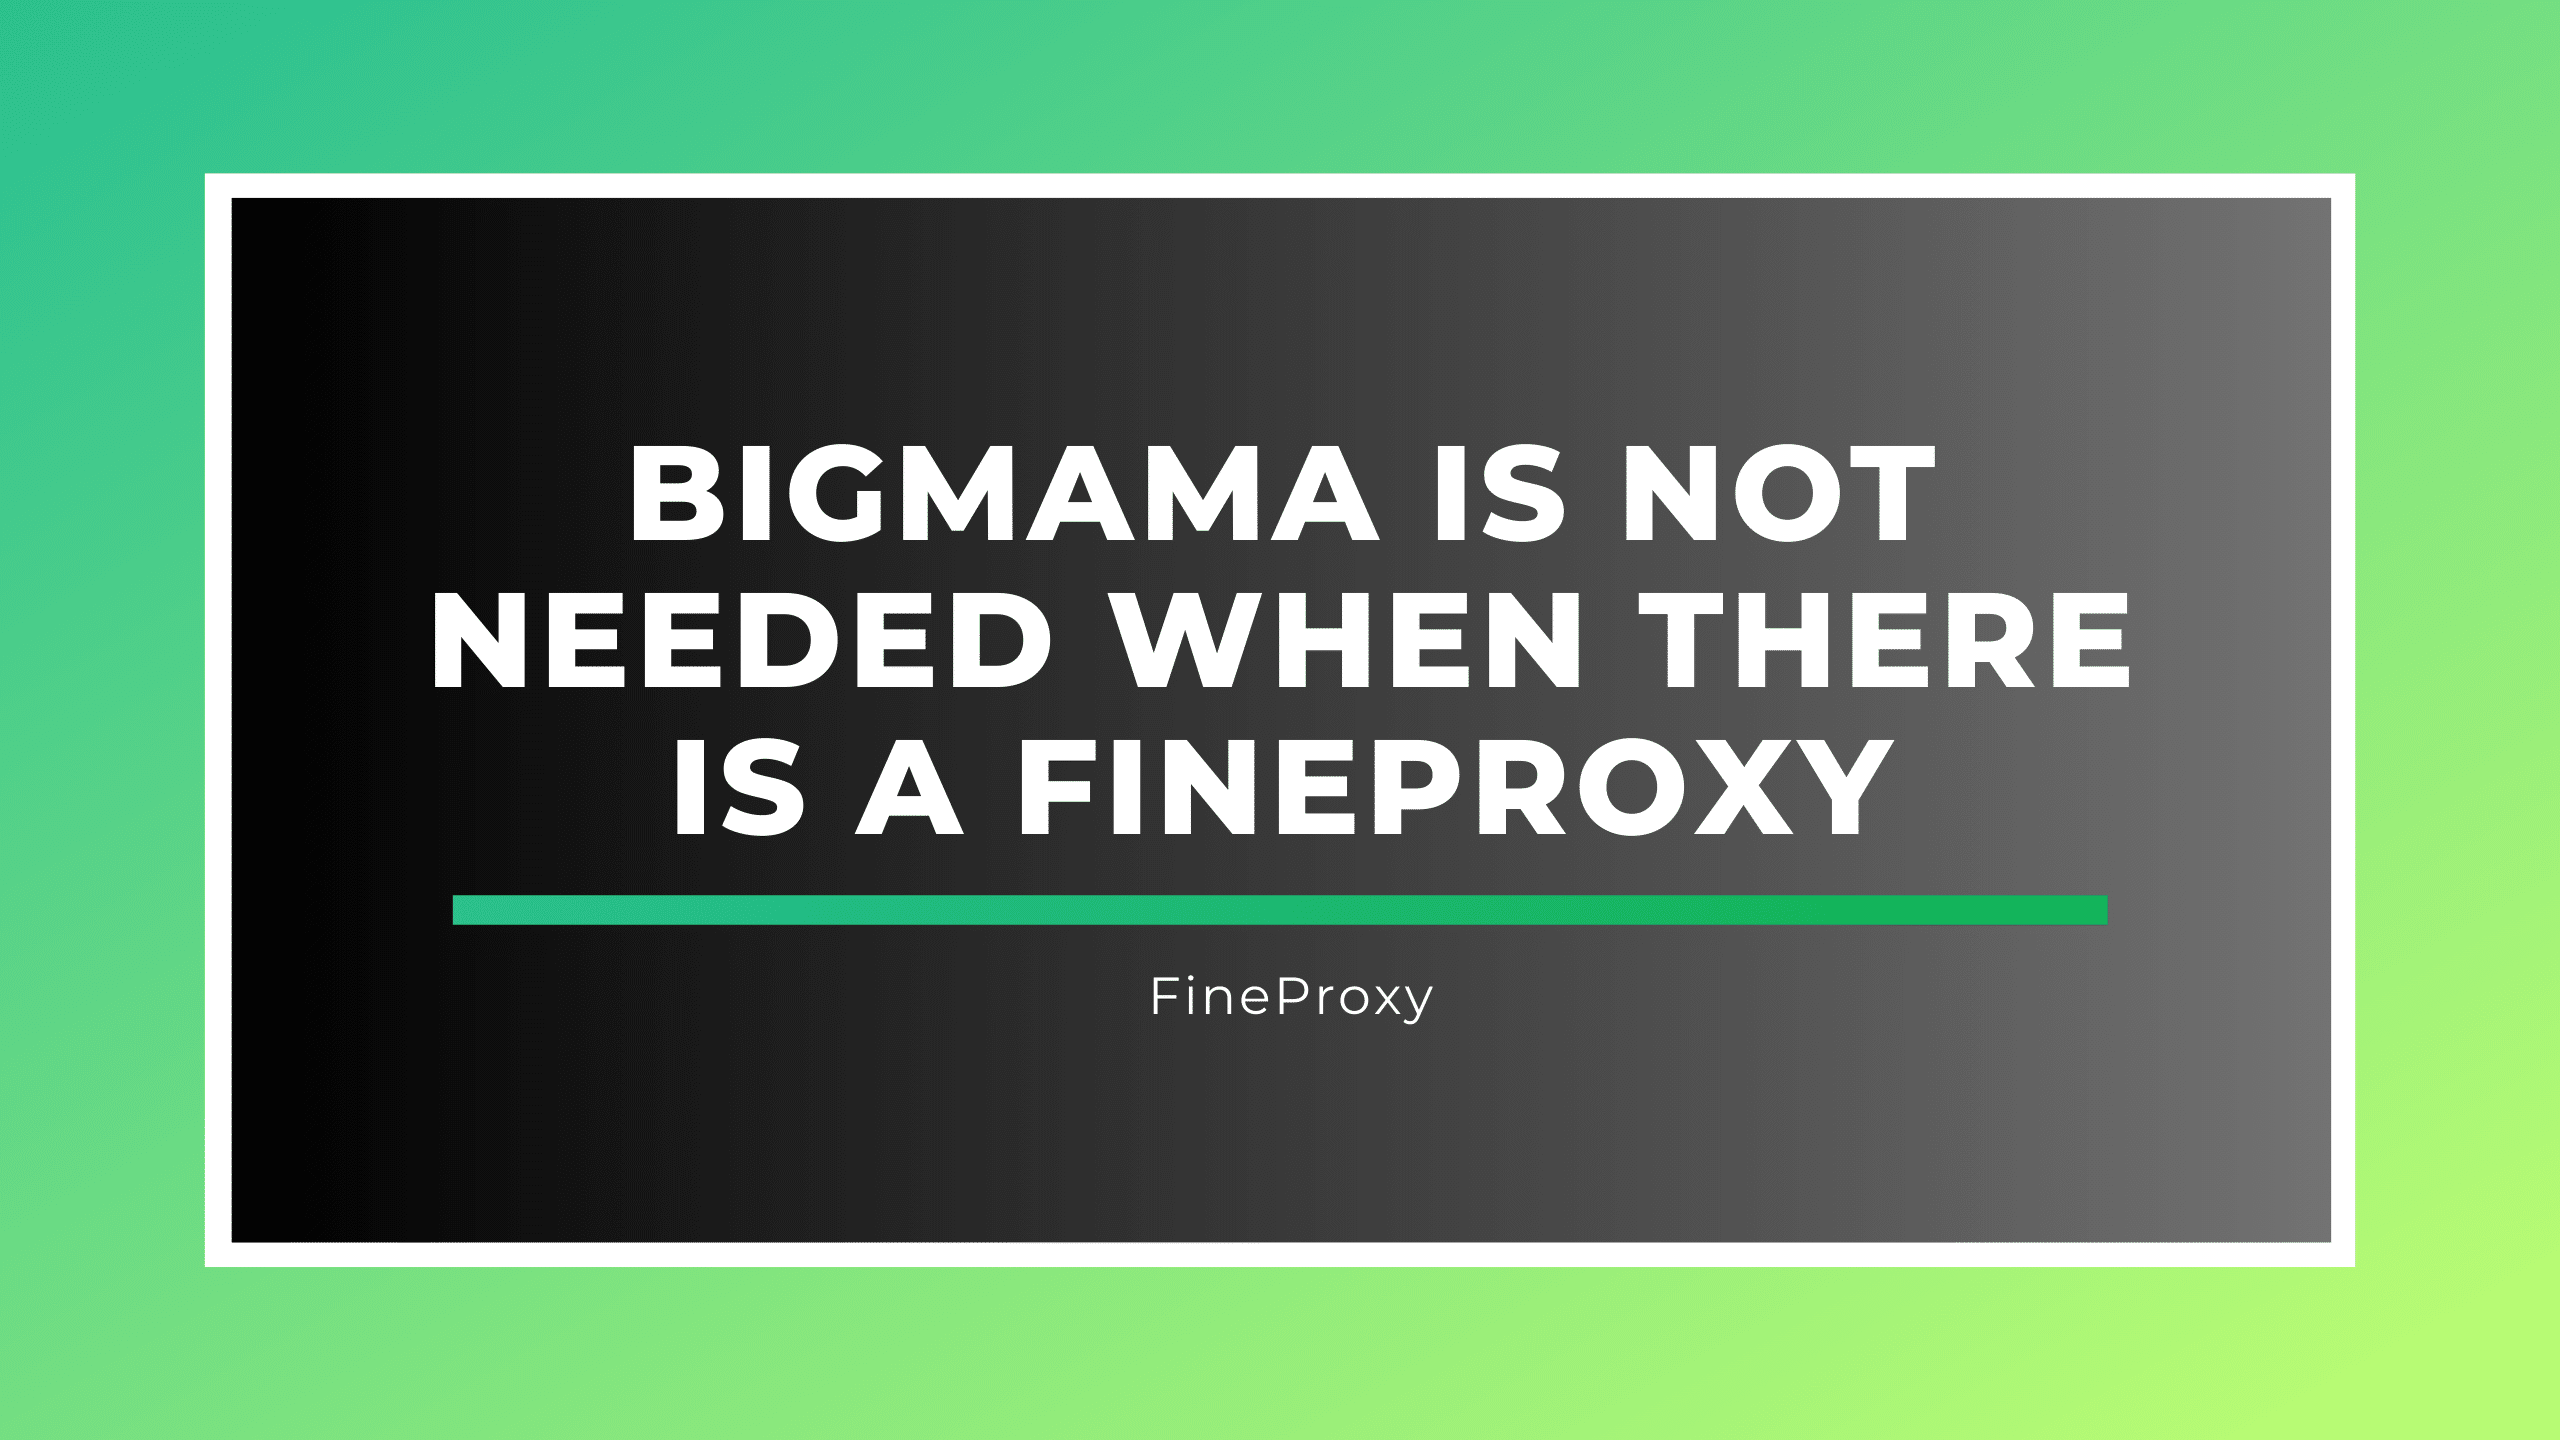 Bigmama nie jest potrzebna, gdy istnieje FineProxy